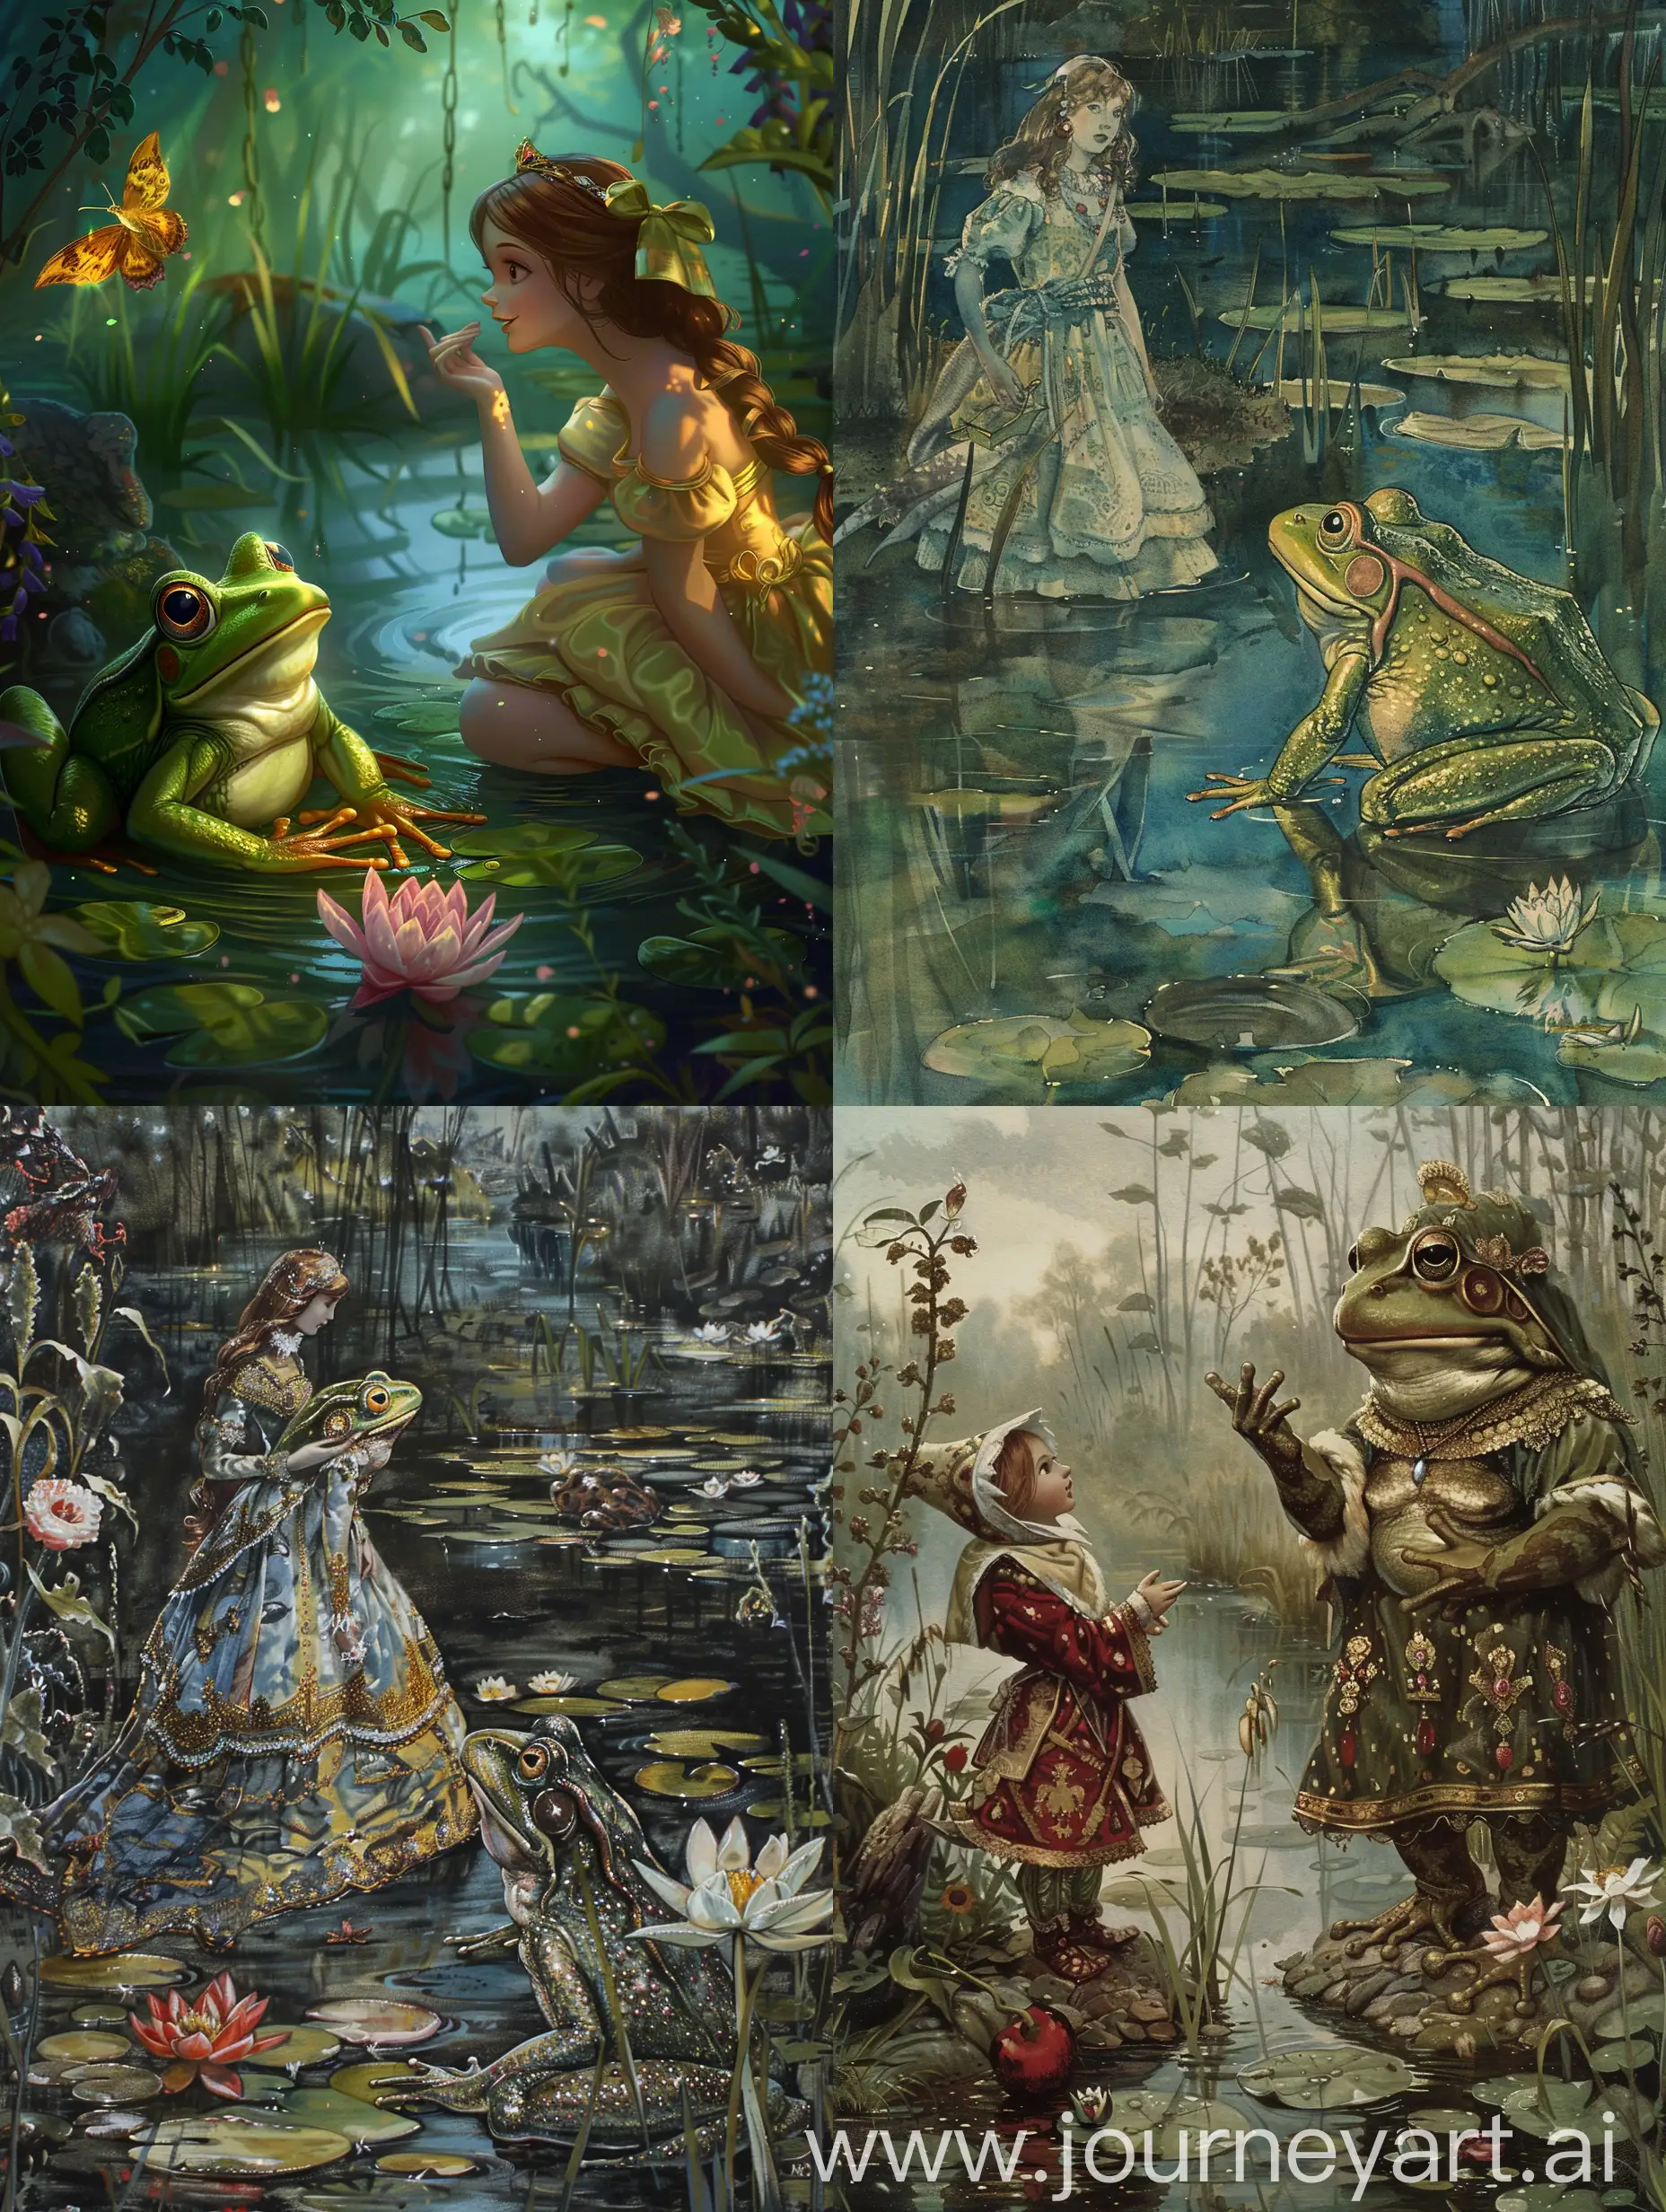 Tsarevna frog, turns into a girl tsarevna, all takes place in the swamp.